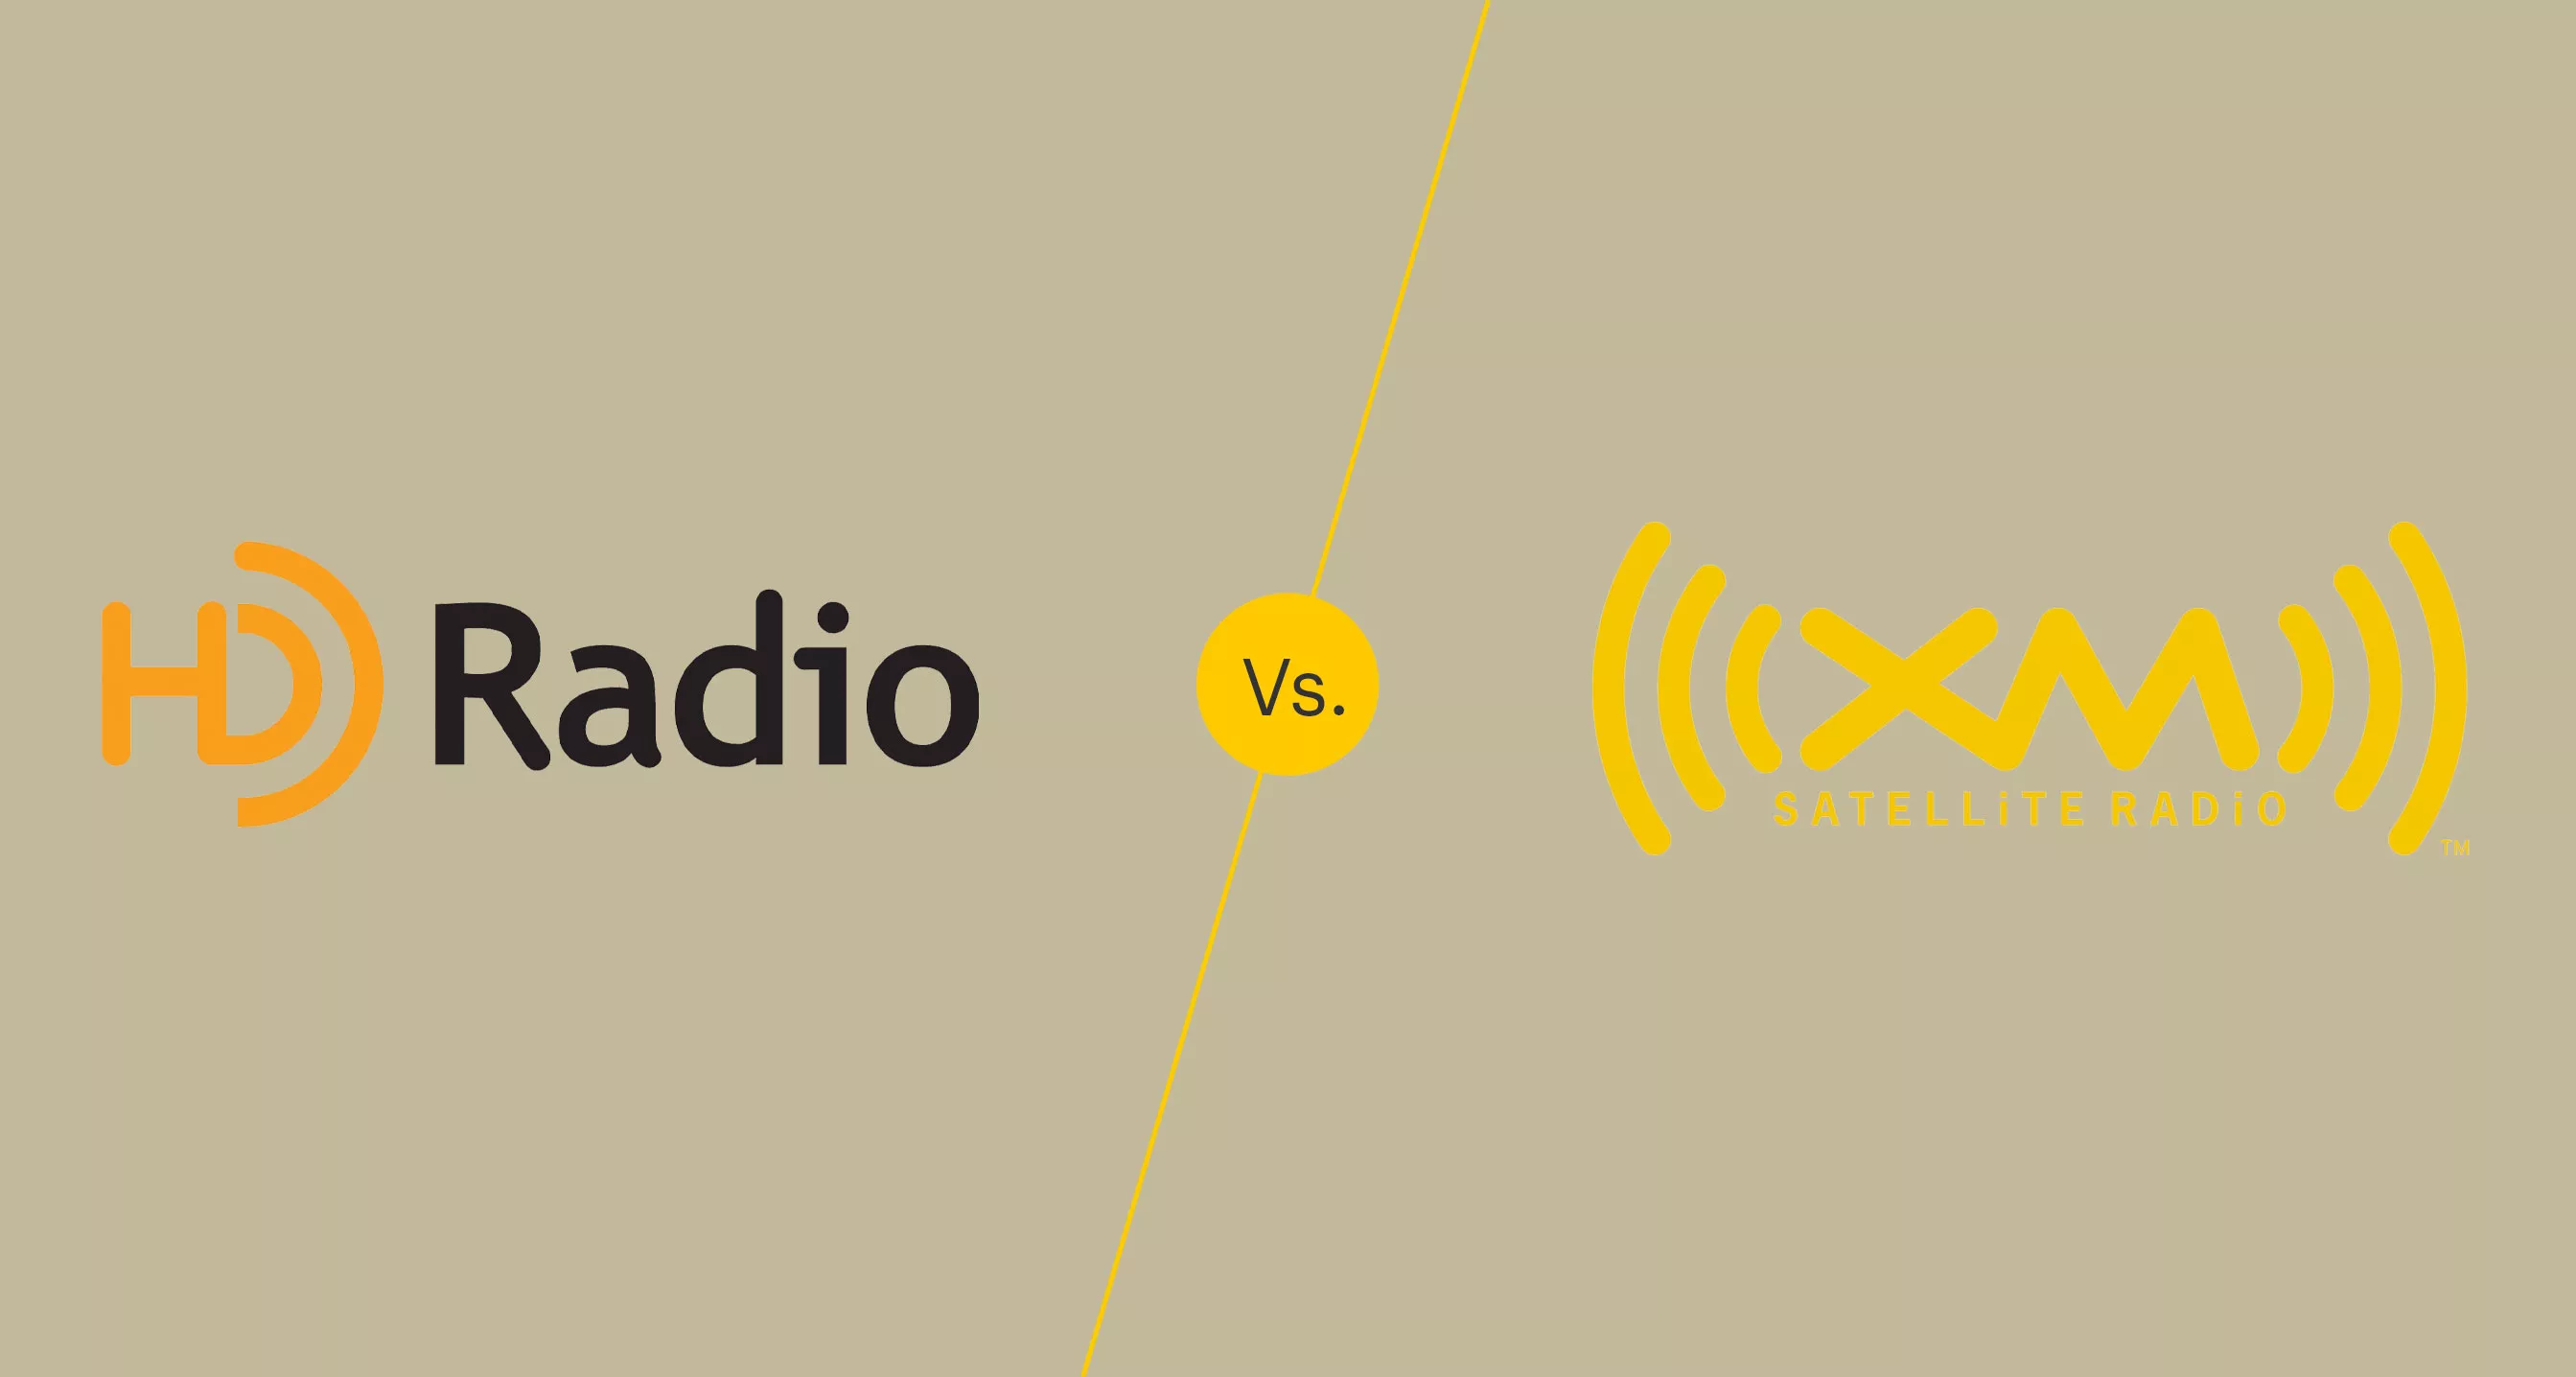 Radio HD vs. Radio por satélite: ¿Cuál es mejor?